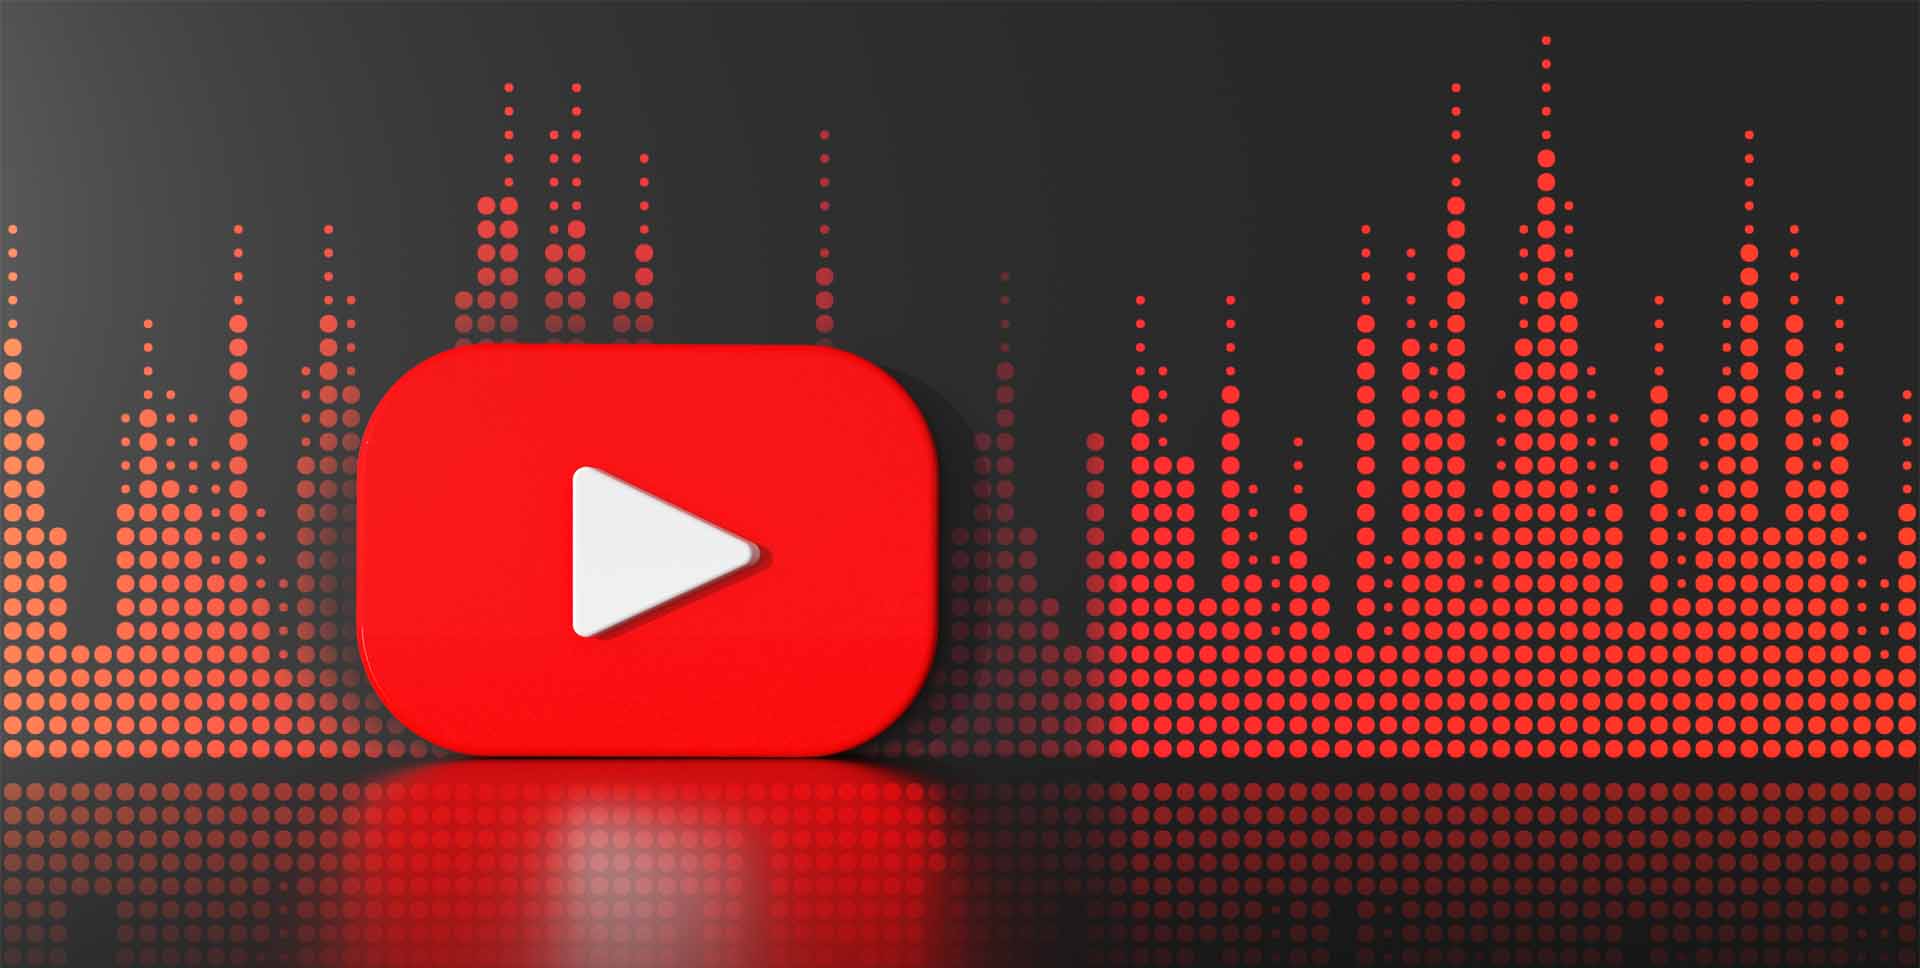 youtube logo with audio equalizer levels